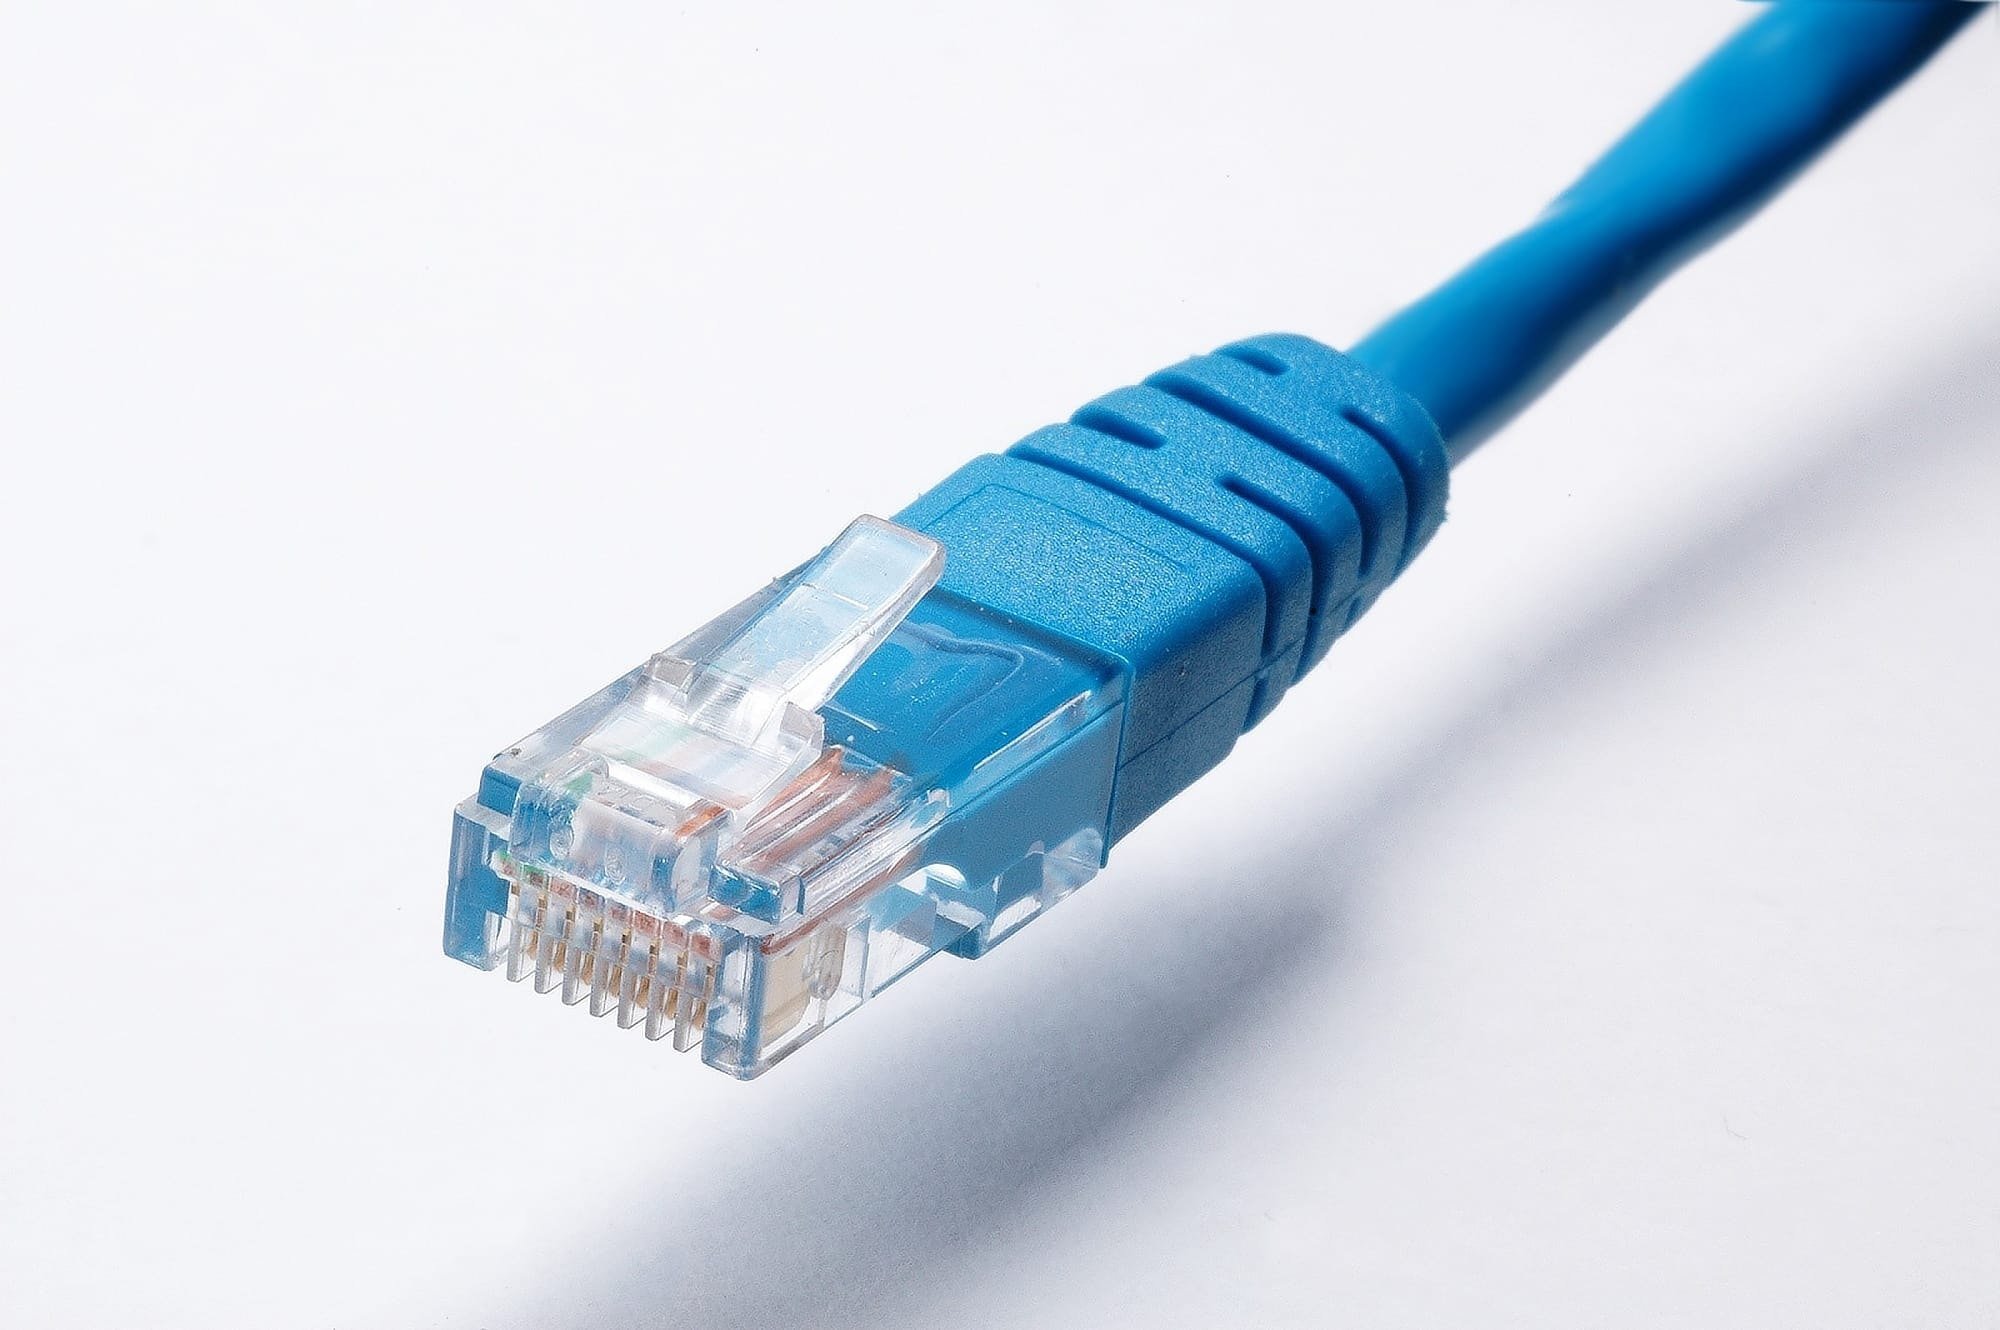 pexels pixabay 415043 Jaki jest najlepszy kabel do internetu?